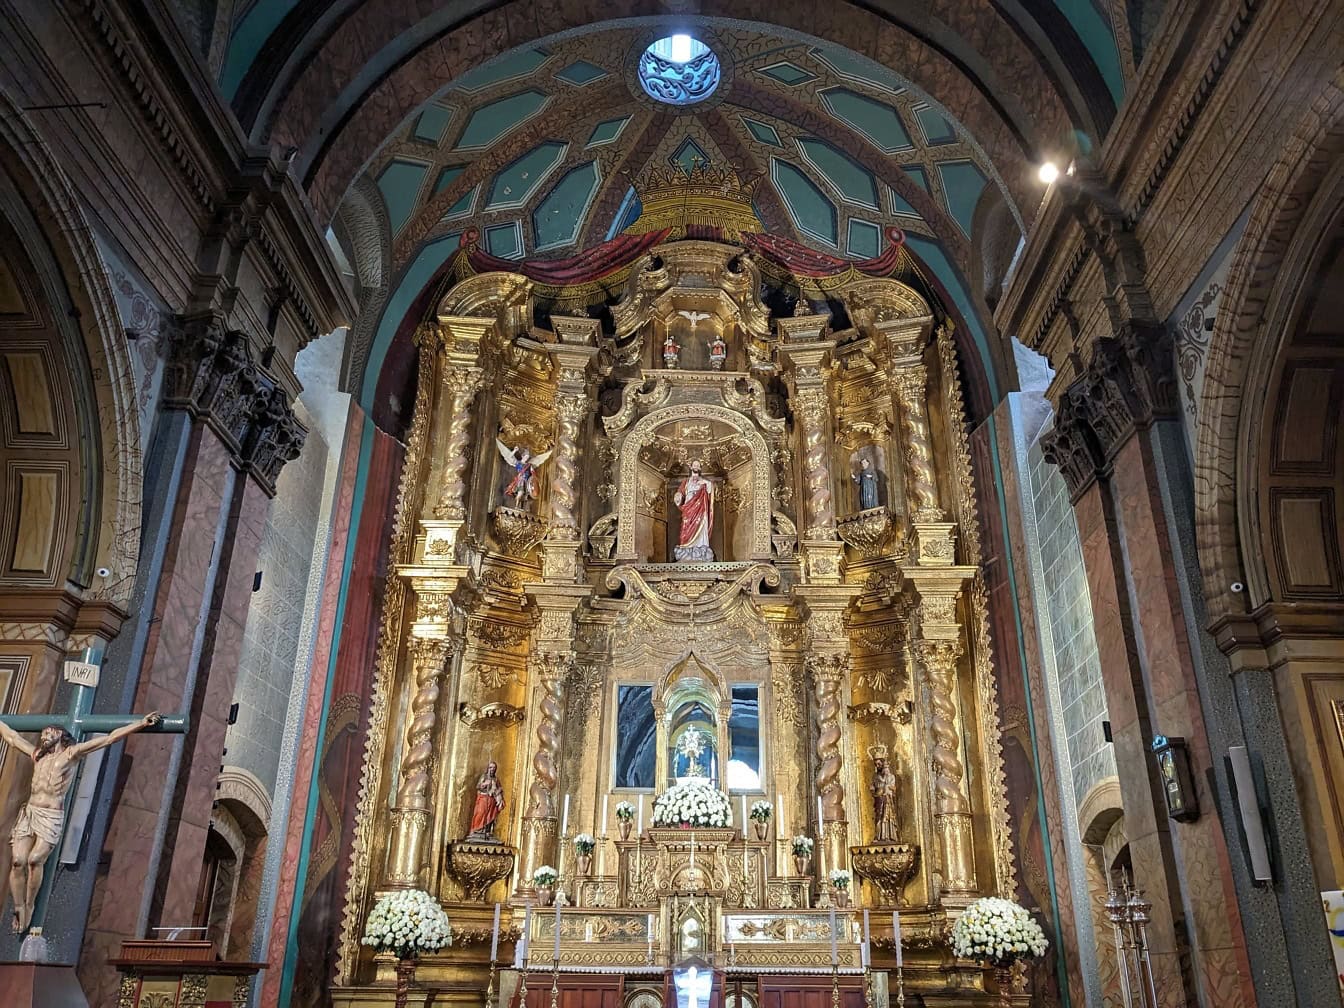 Bàn thờ trang trí công phu bằng vàng với những bức tượng trong một nhà thờ Công giáo Phục hưng của Đền tạm ở Quito, một thủ đô của Ecuador